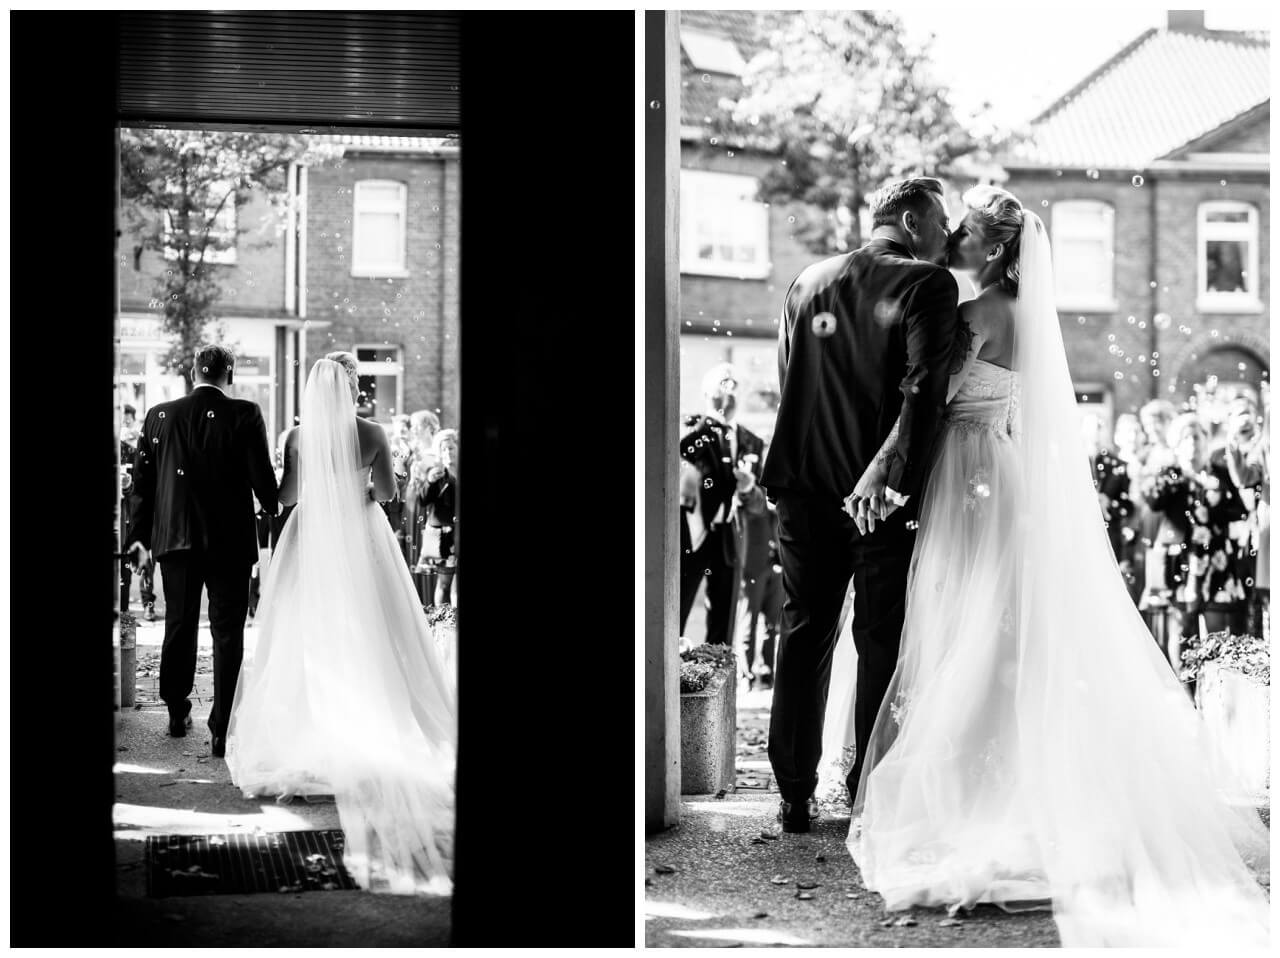 Braut und Bräutigam sind von hinten zu sehen wie sie dir Kirche nach der Hochzeit verlassen.